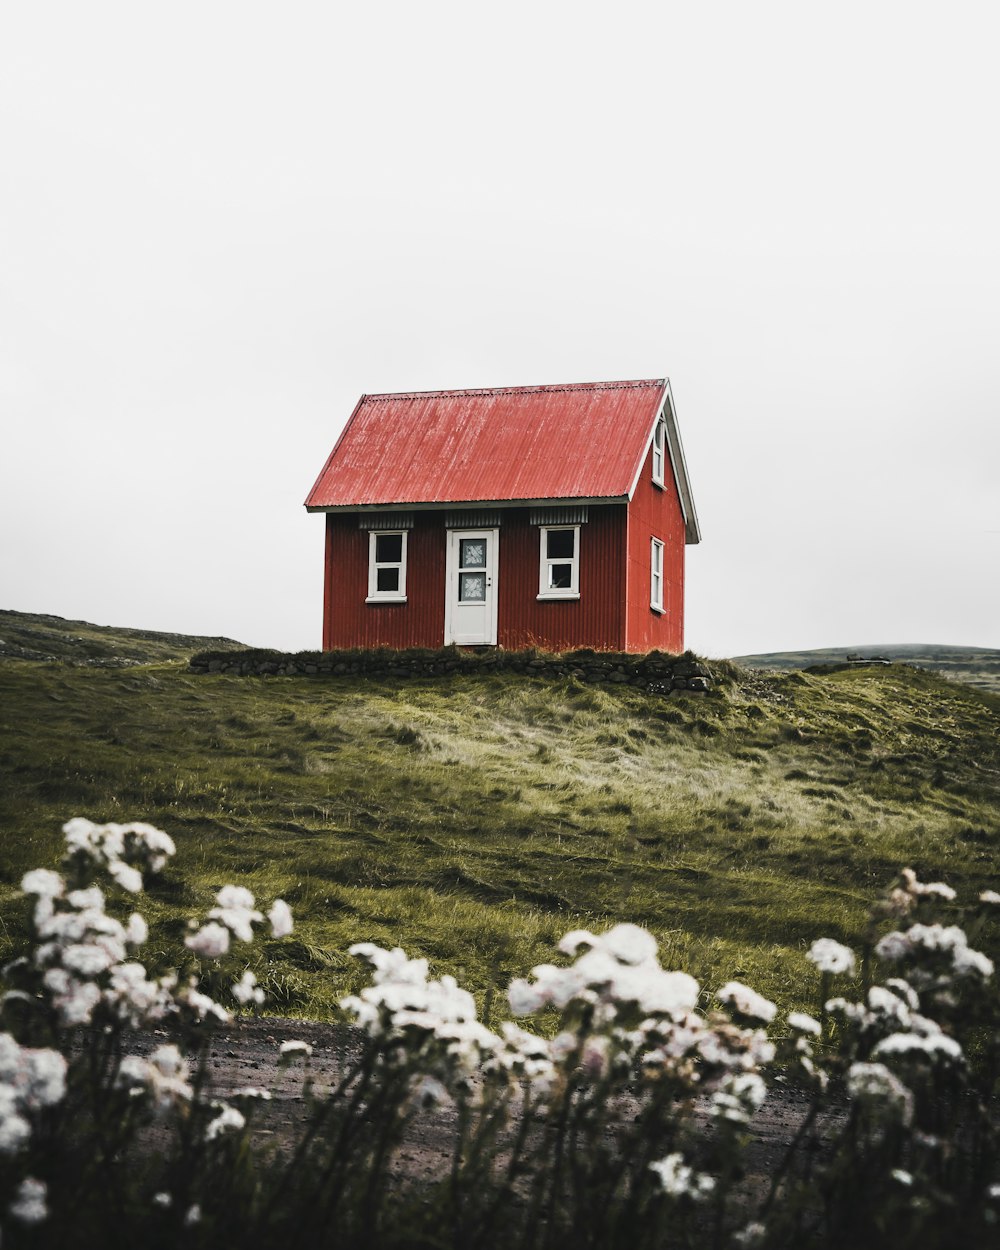 La maison rouge et blanche entoure le champ d’herbe verte